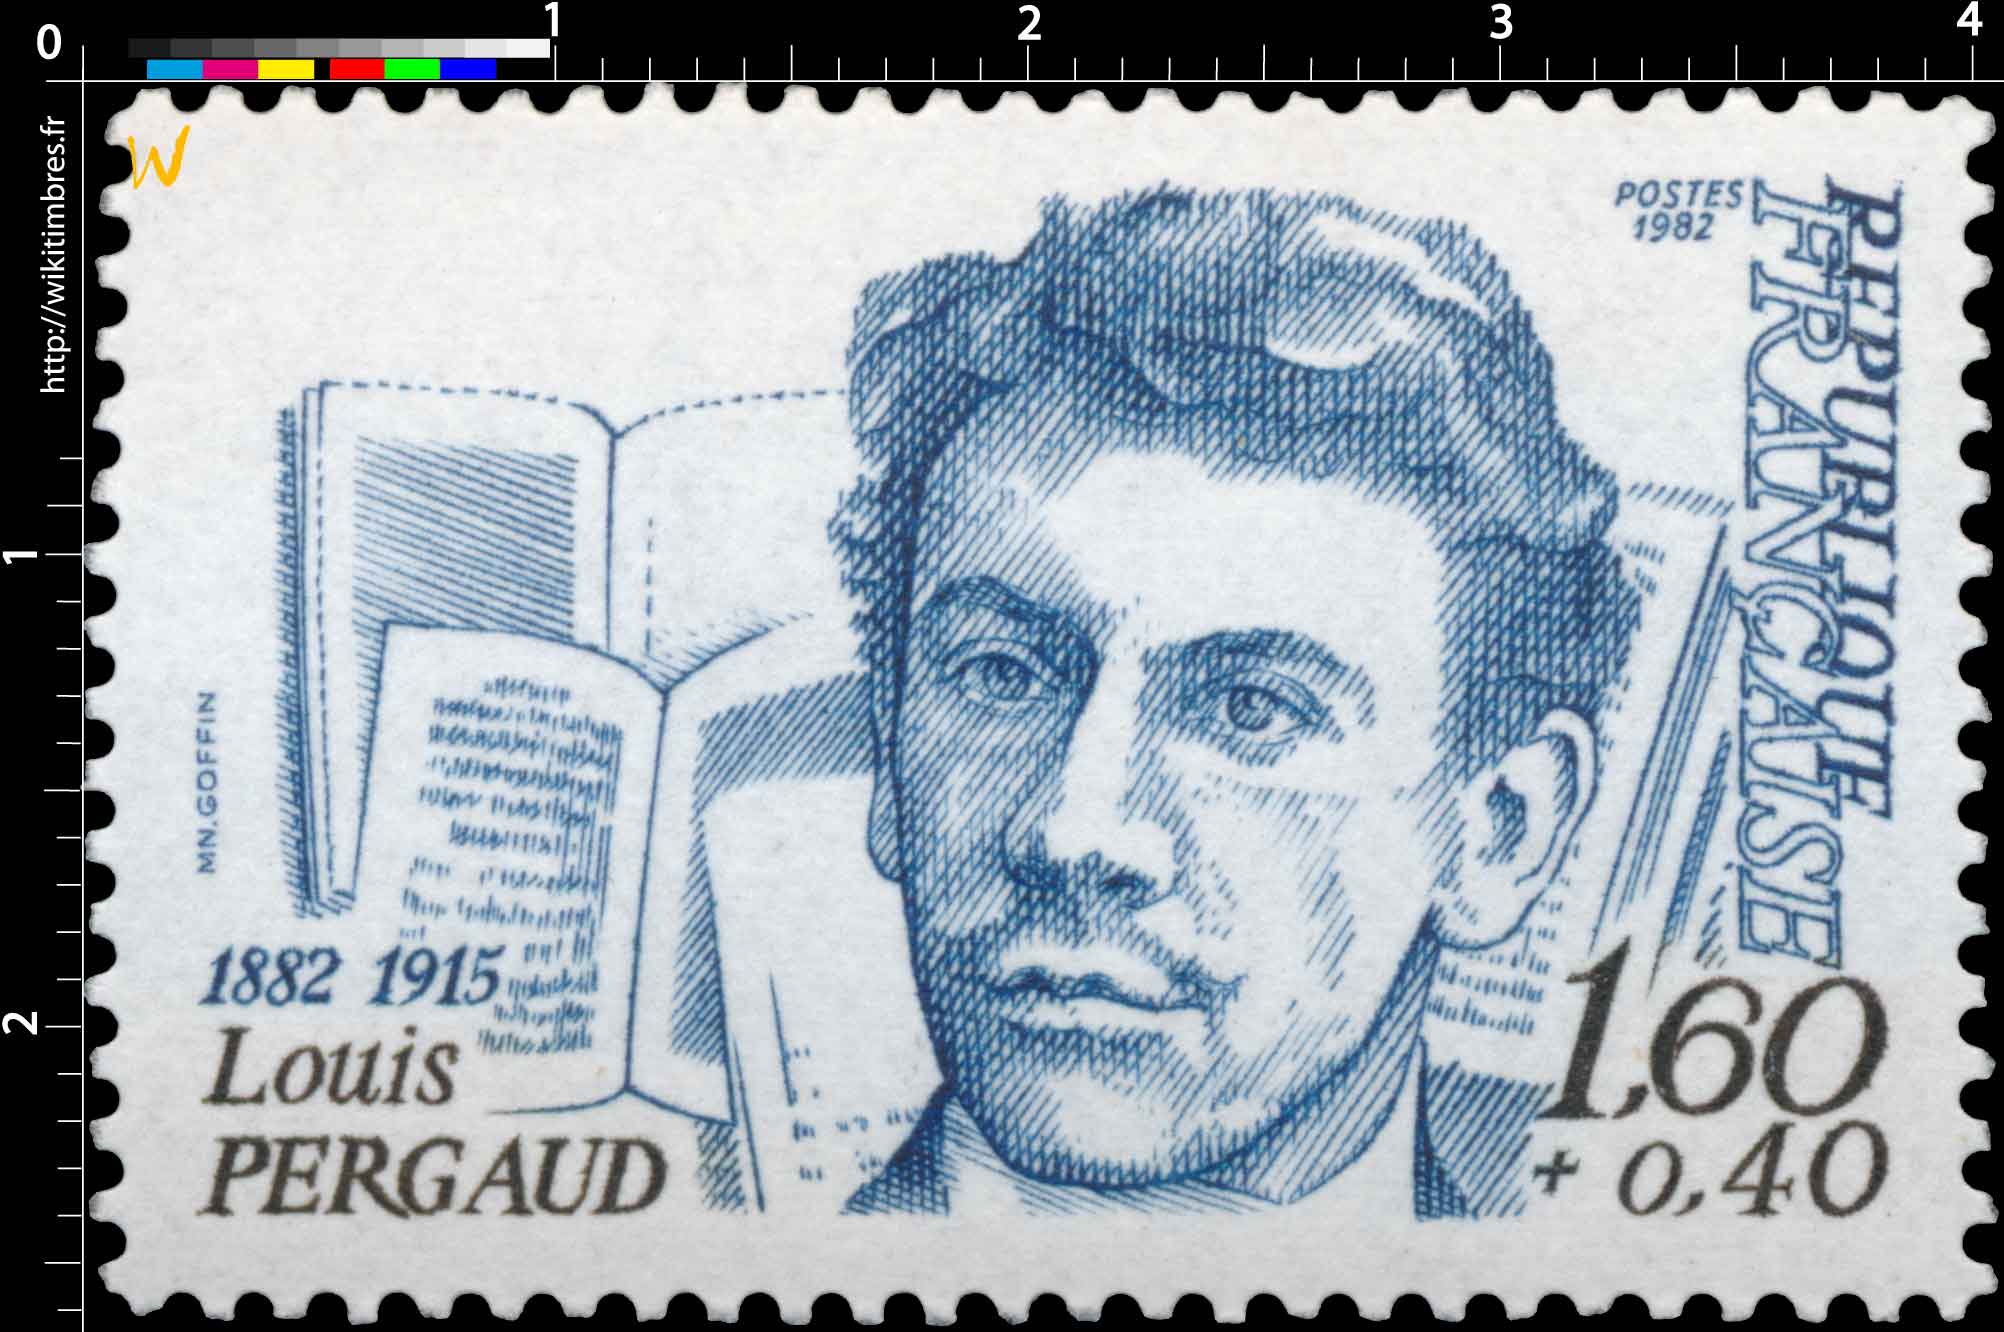 1982 Louis PERGAUD 1882-1915